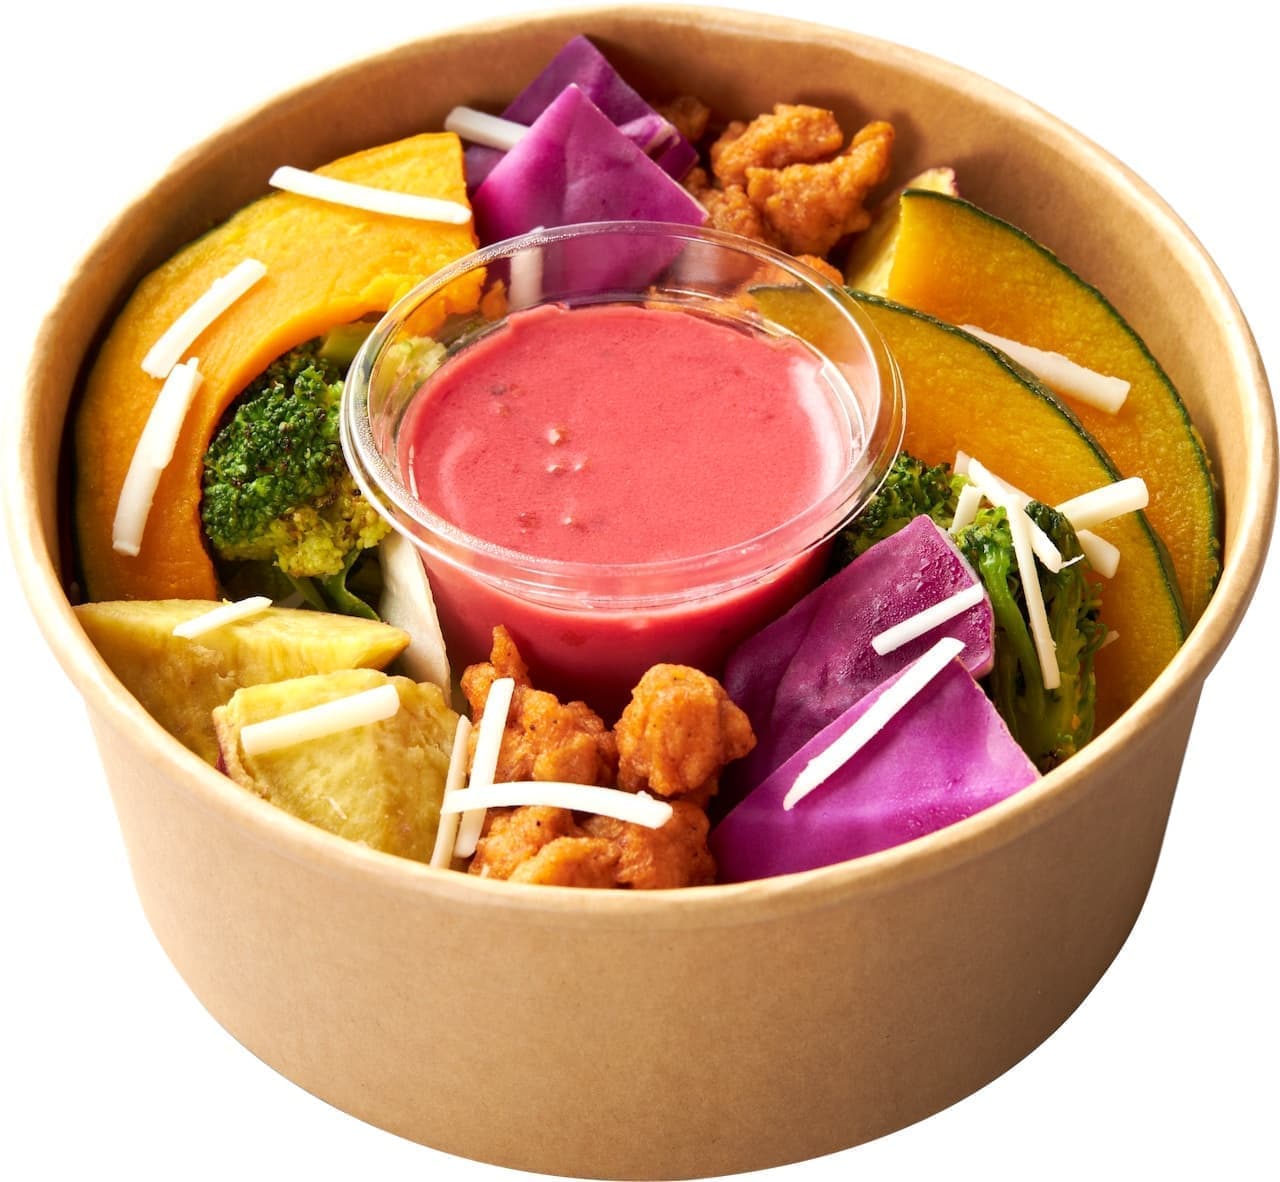 Natural Lawson "10-item colorful salad